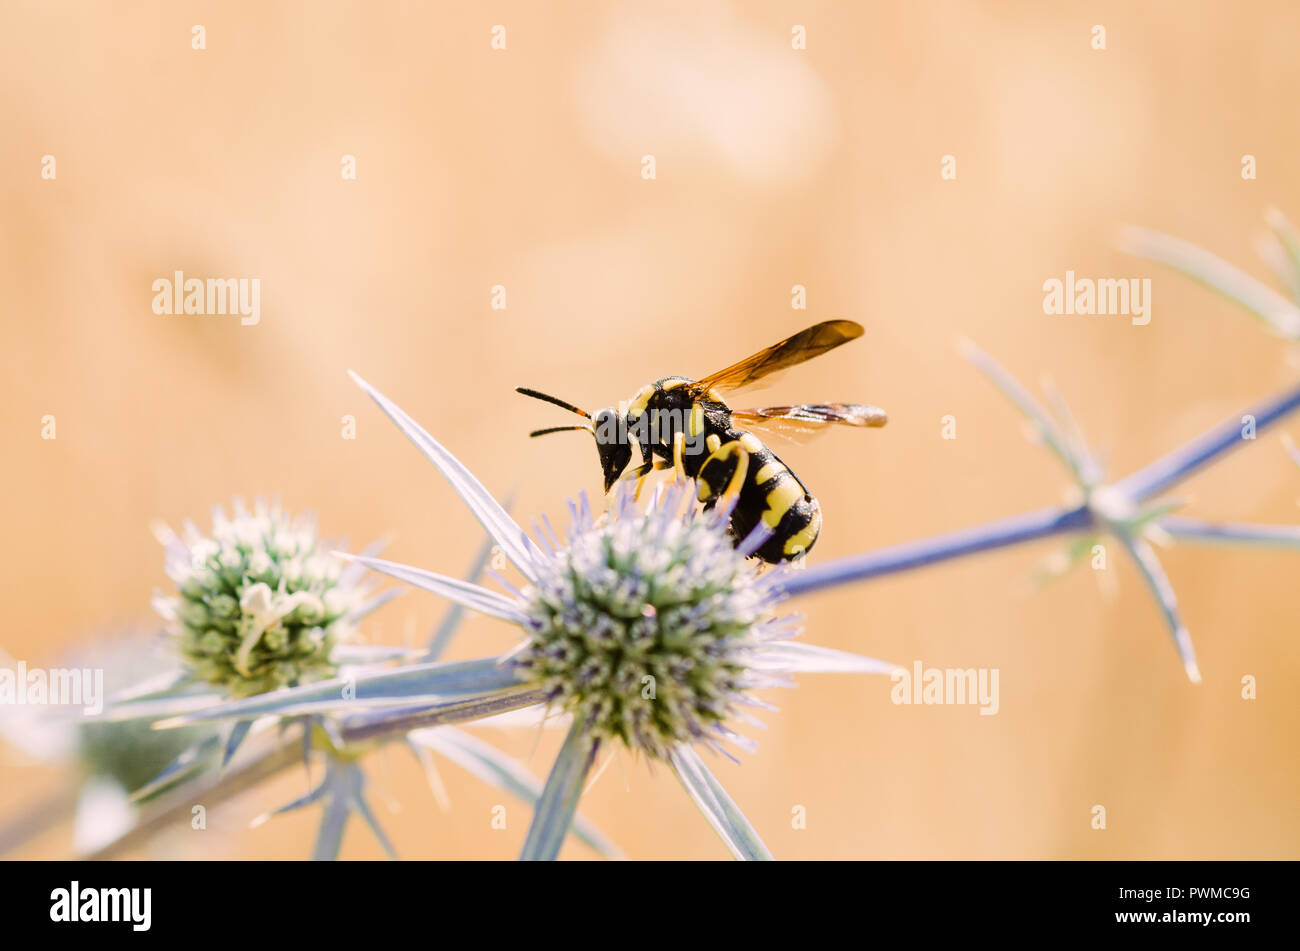 Cerrar la fotografía, amarillo naranja y negro con insectos abeja verde y flores púrpuras, fondo claro y bokeh Foto de stock